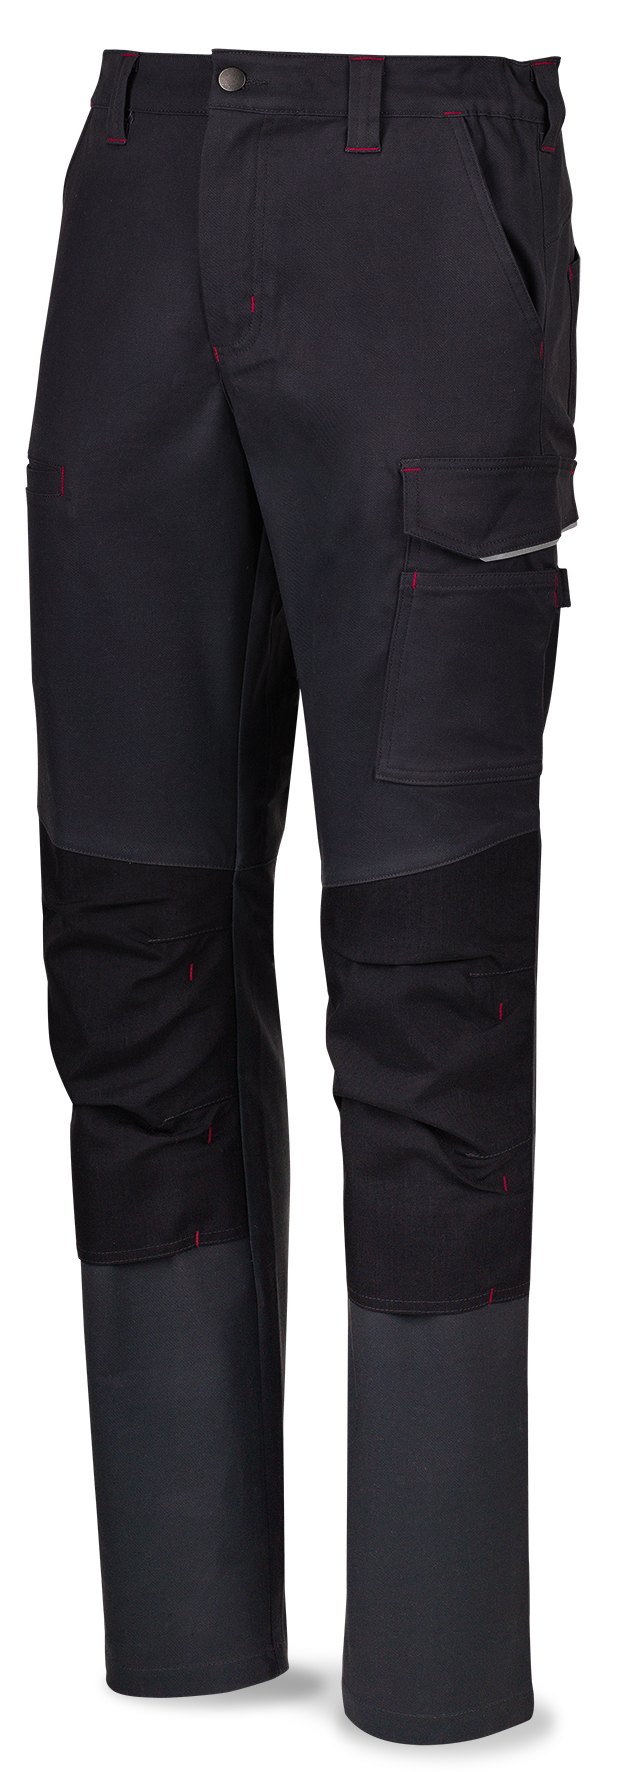 588PSSAM Vetements de travail laboral  Pro Series Pantalon STRETCH bleu marine en polyester/coton 245 gr. Multipoches